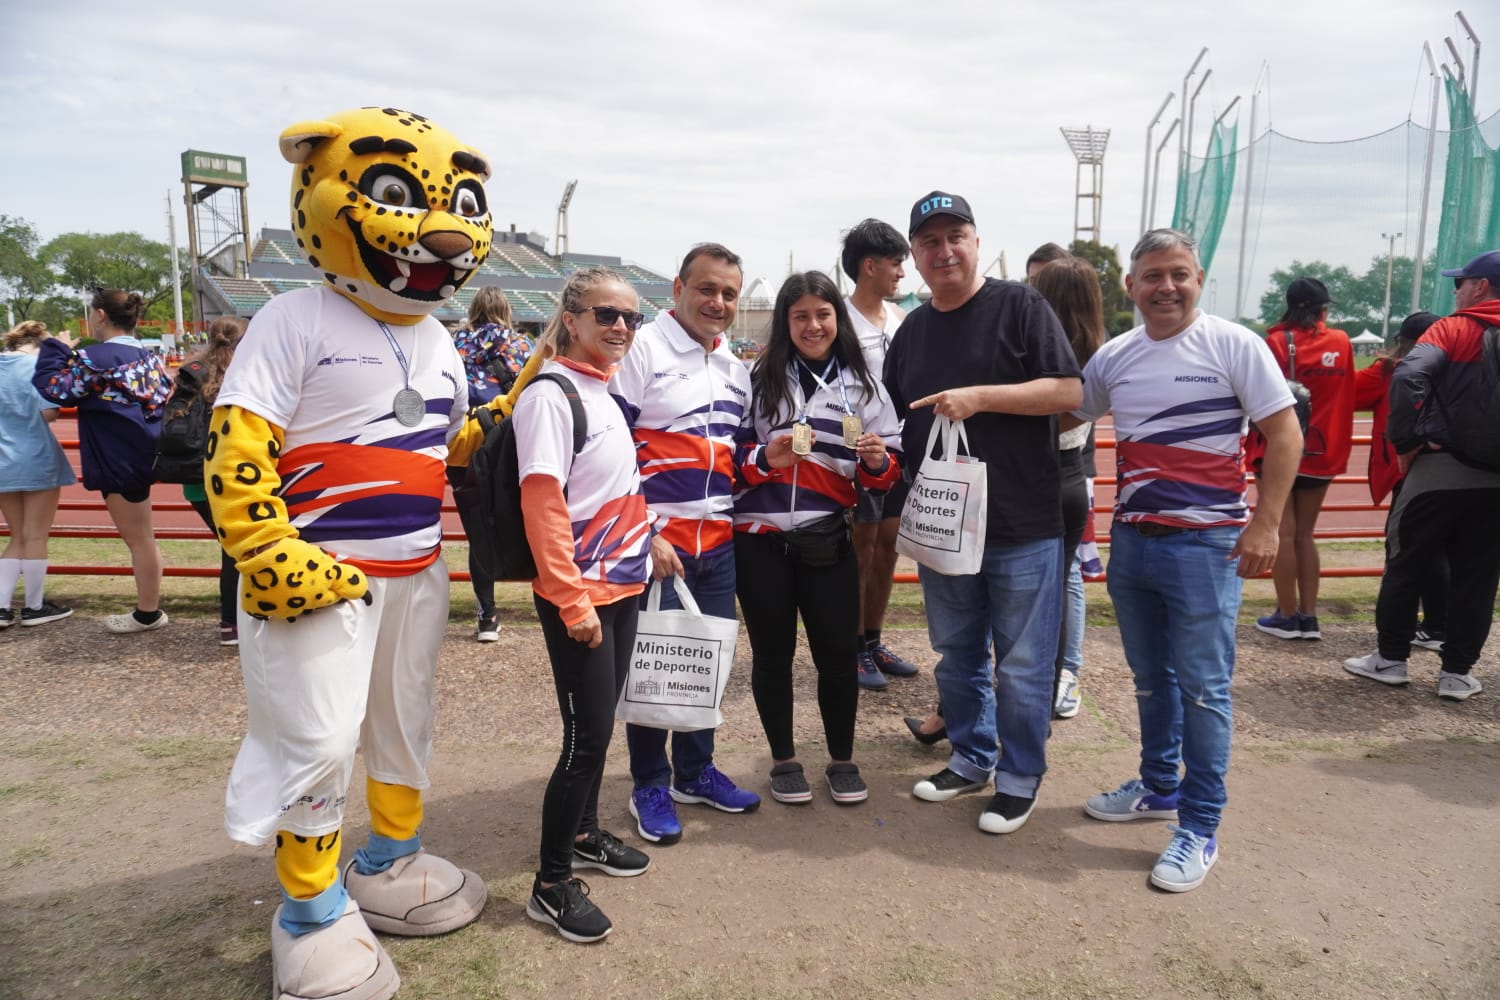 El gobernador Herrera Ahuad y el Diputado Provincial Passalacqua, acompañaron a la delegación misionera en los Juegos Evita